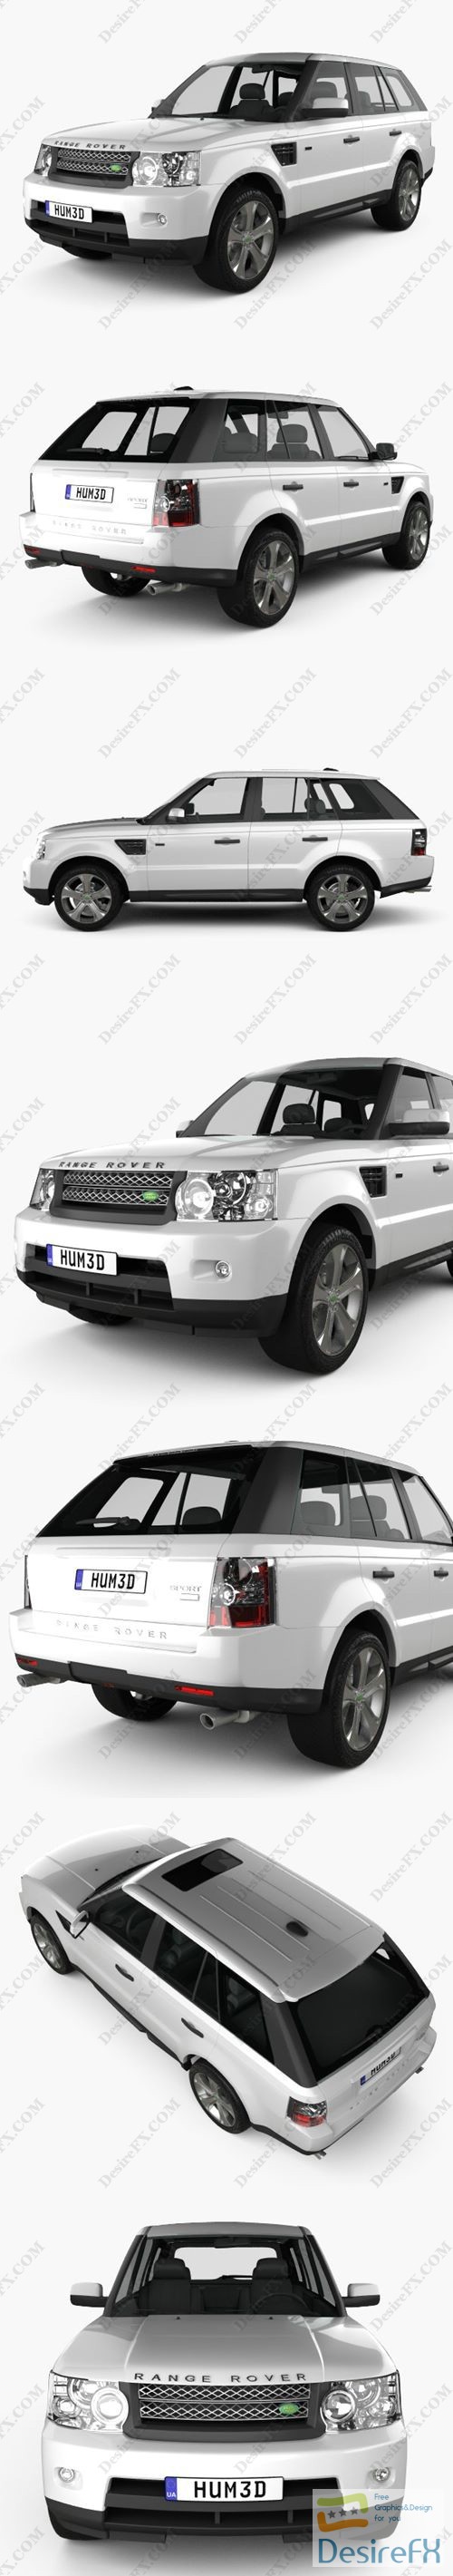 Land Rover Range Rover Sport 2011 3D Model